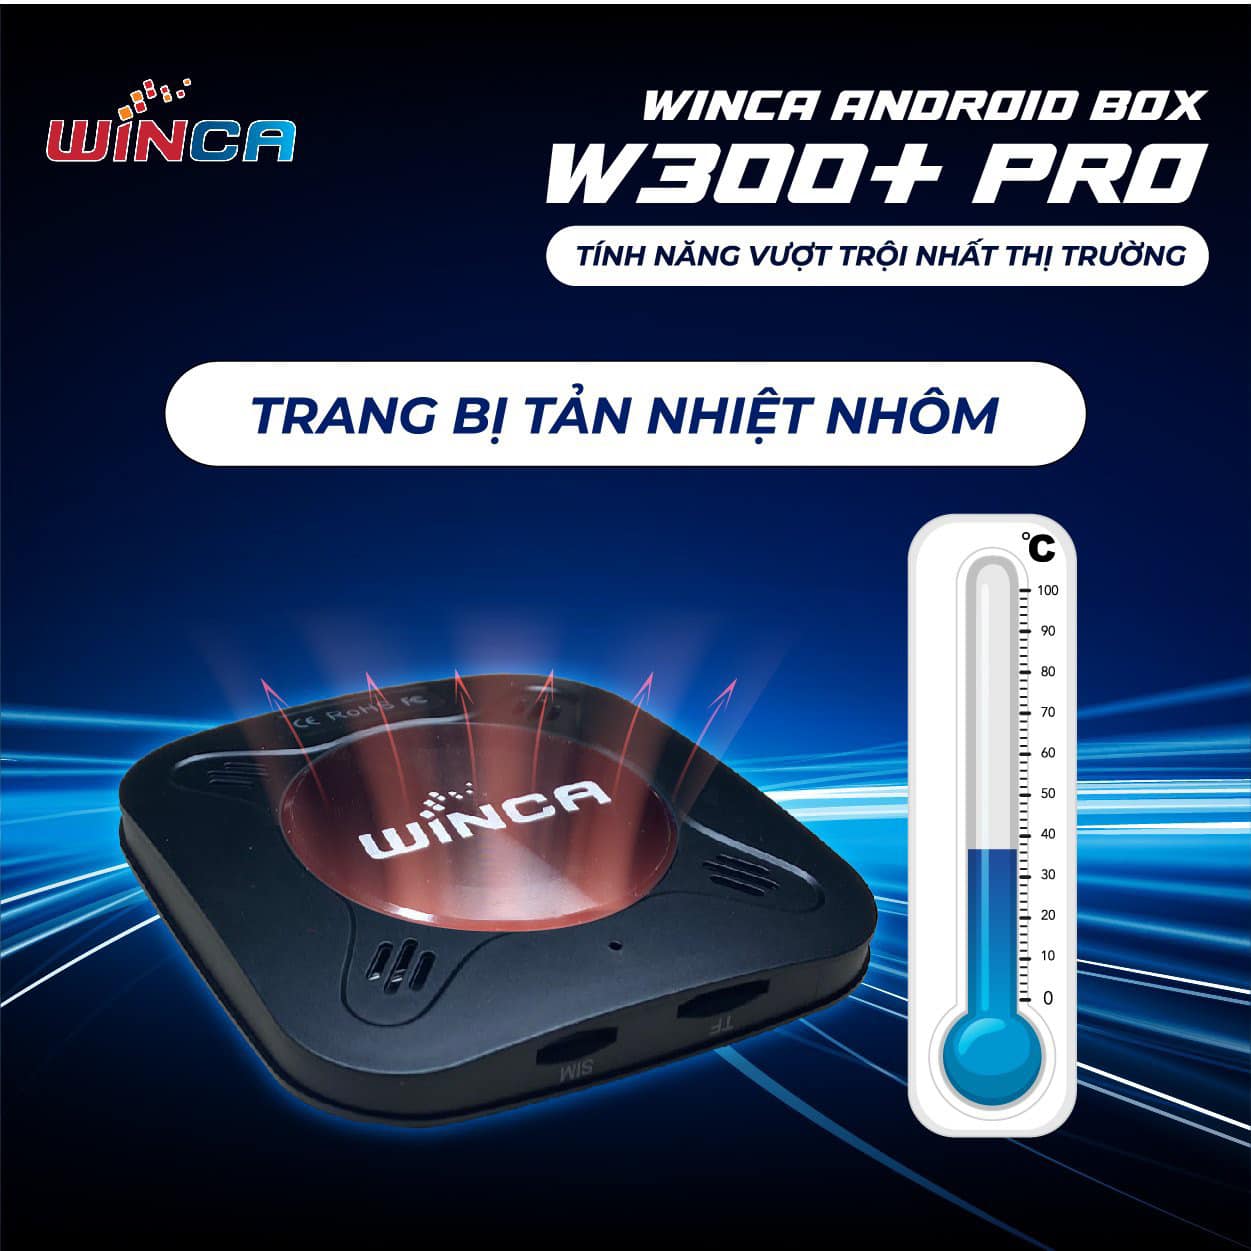 Winca Android Box W300+ Pro có thiết kế tinh xảo, tản nhiệt cực tốt